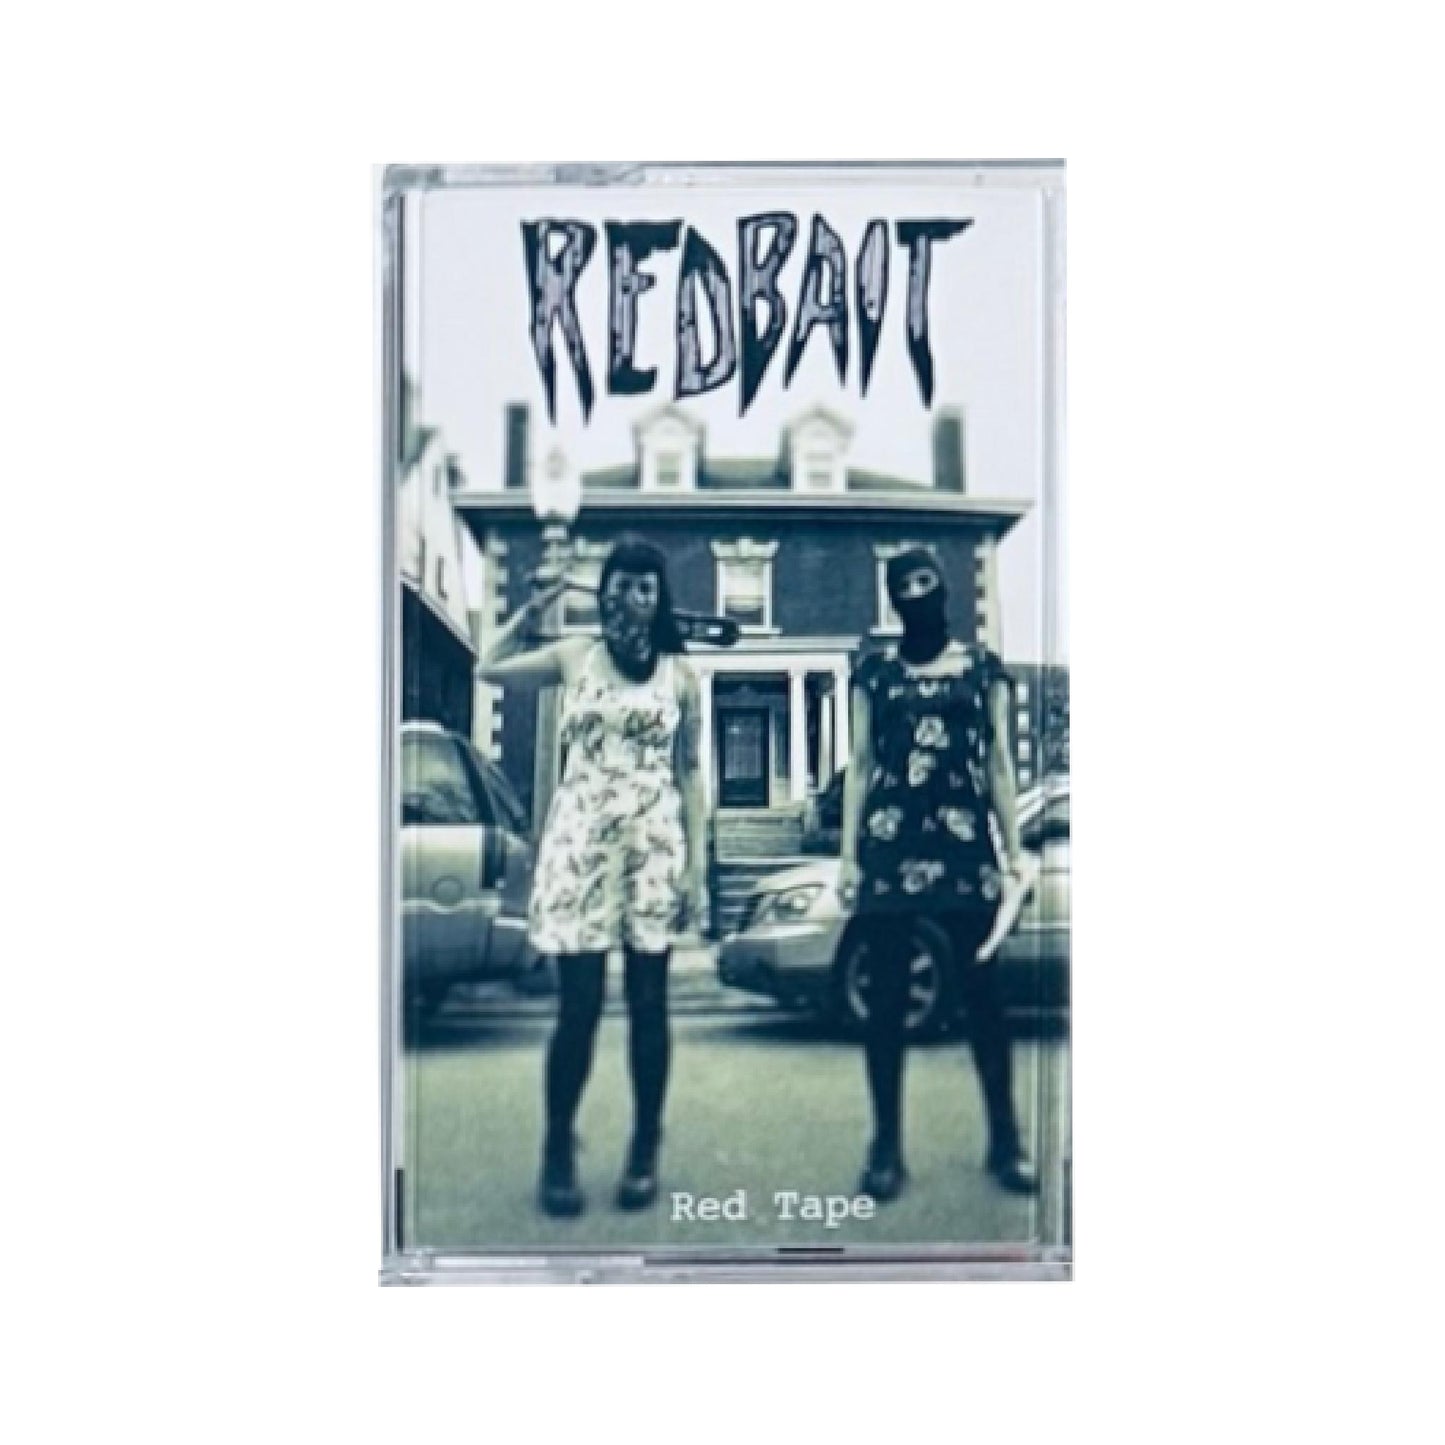 Redbait - Red Tape CS (cassette tape)